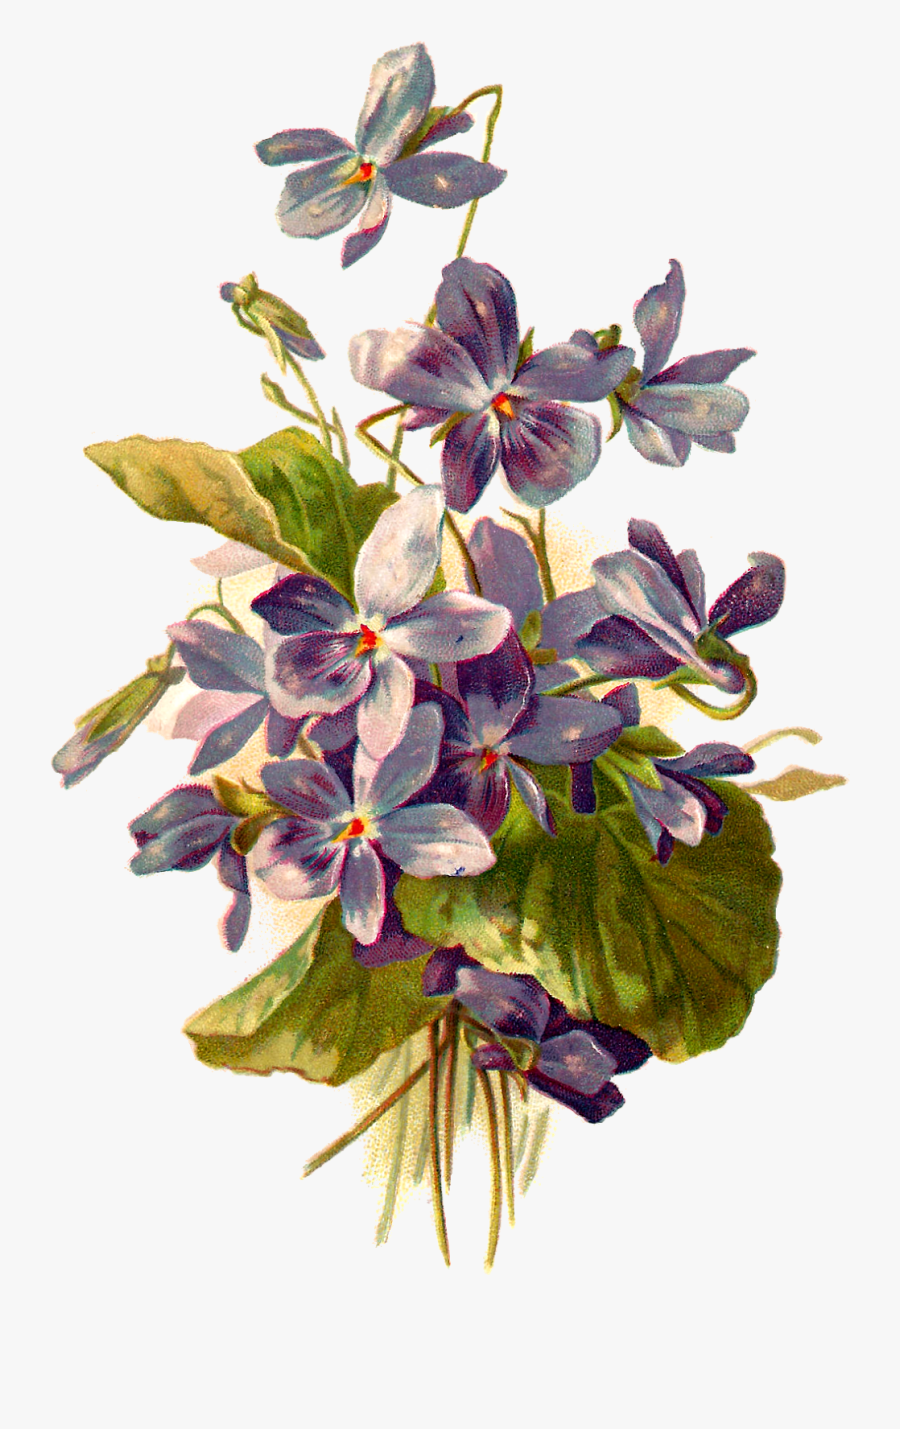 Forget Me Not Flowers - Botanical Violet Flower Illustration, Transparent Clipart